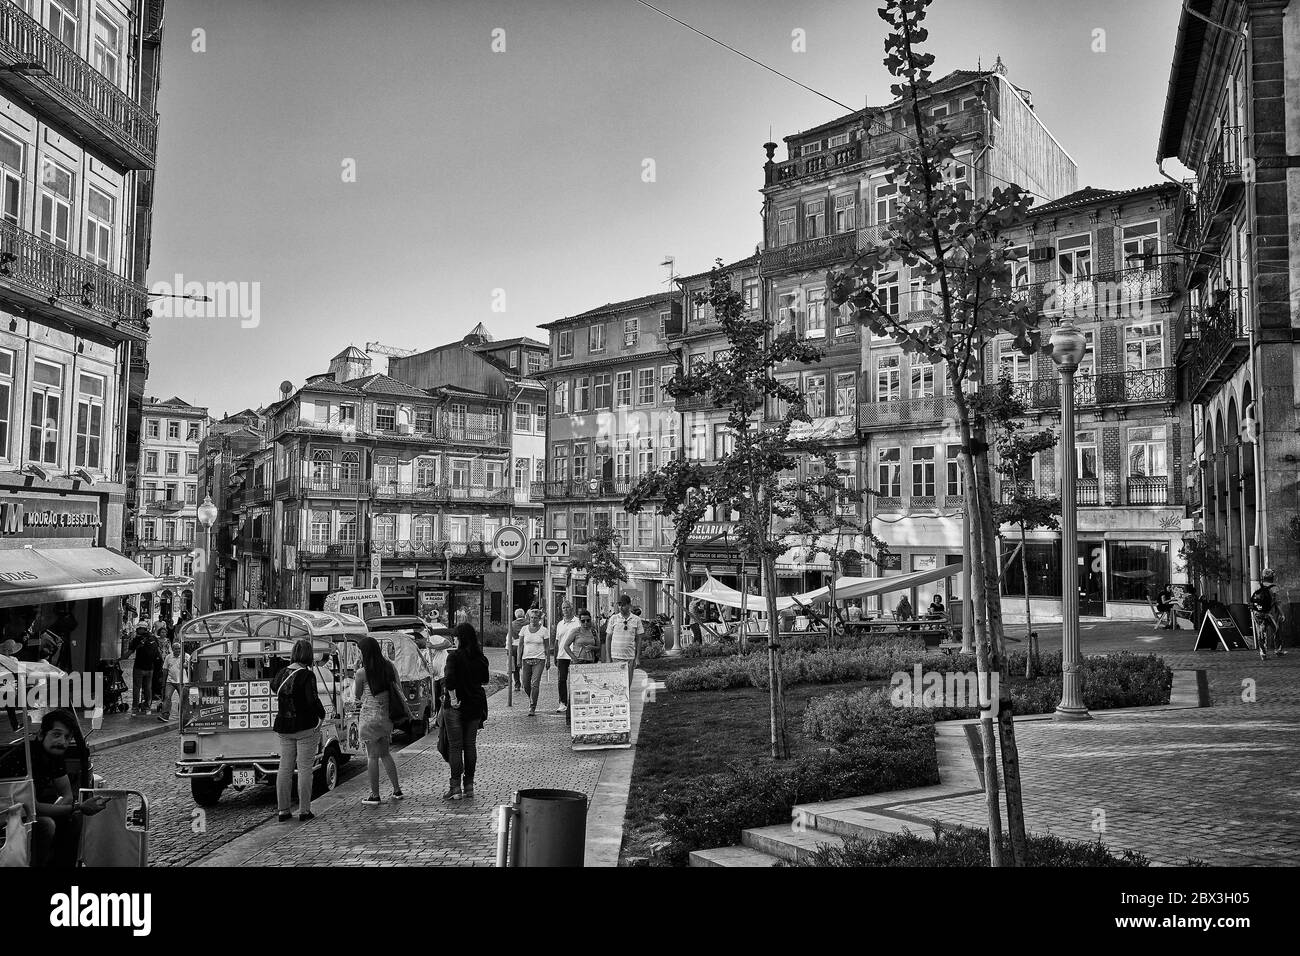 Scena di quartiere che mostra gli stili architettonici delle varie facciate e le ringhiere in ferro dei balconi di Porto Portogallo Foto Stock